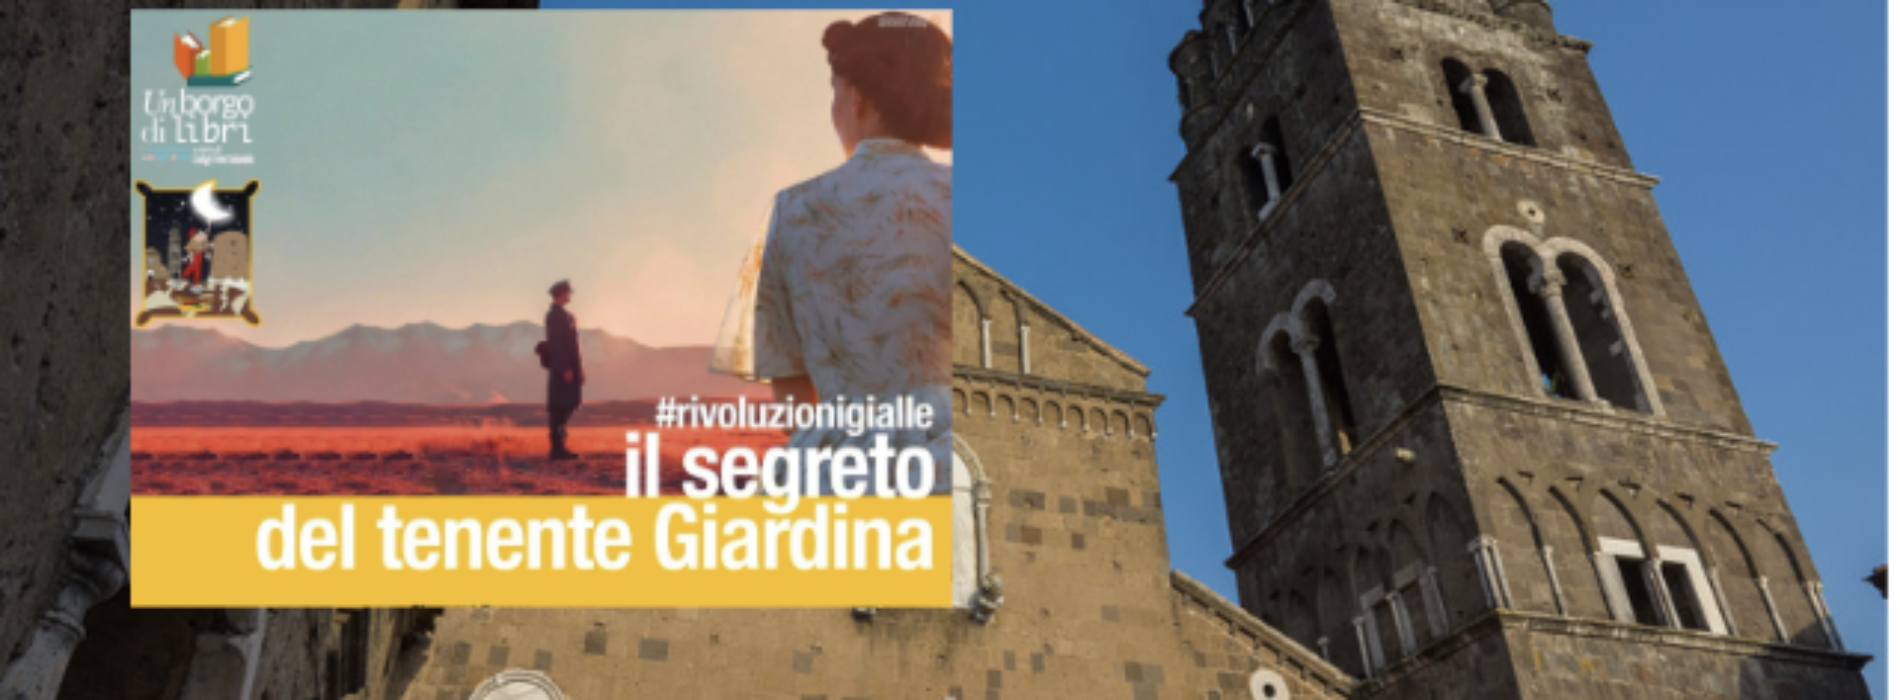 Il segreto del tenente Giardina, in Cattedrale per Un borgo di libri